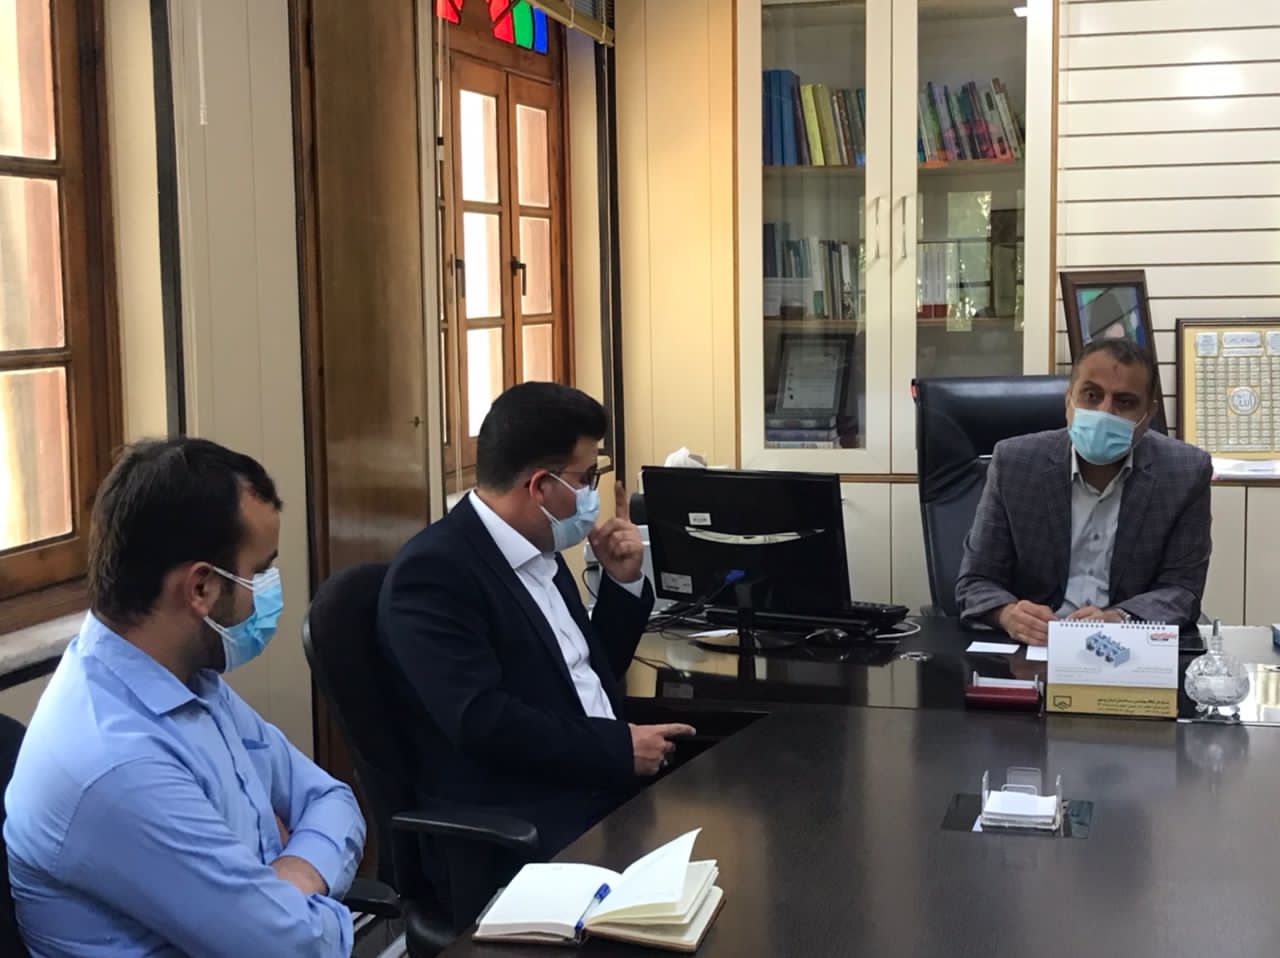 دیدار اعضای شورا و شهردار اهرم با مدیرکل دفتر شهری و شوراهای استانداری